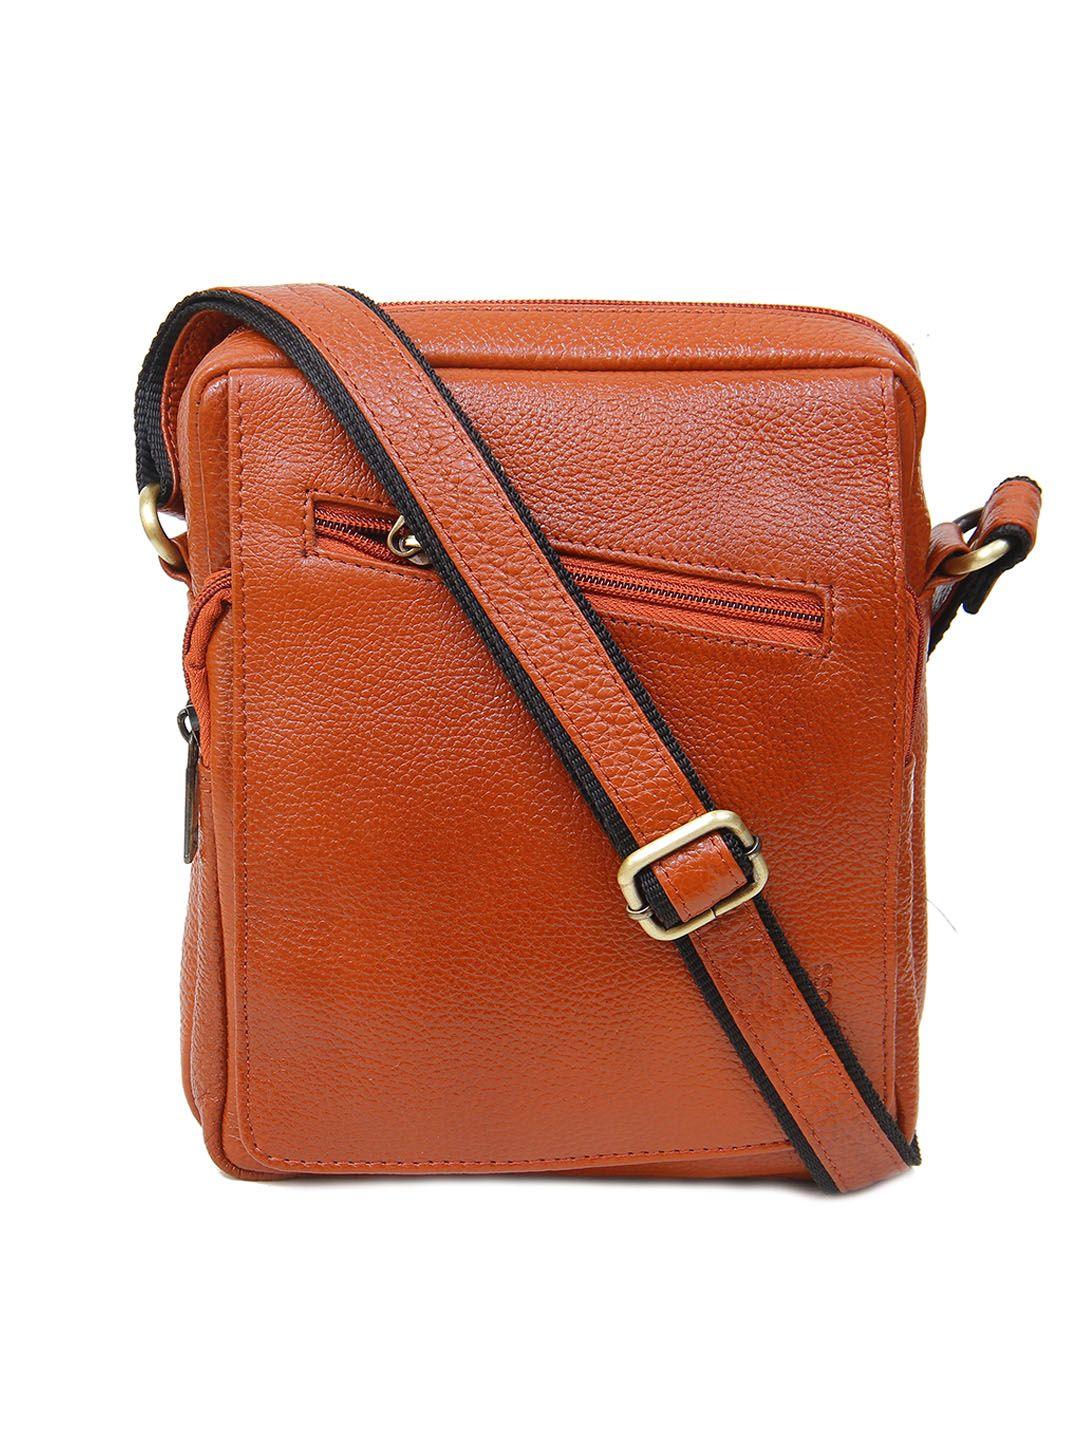 calvadoss leather structured sling bag